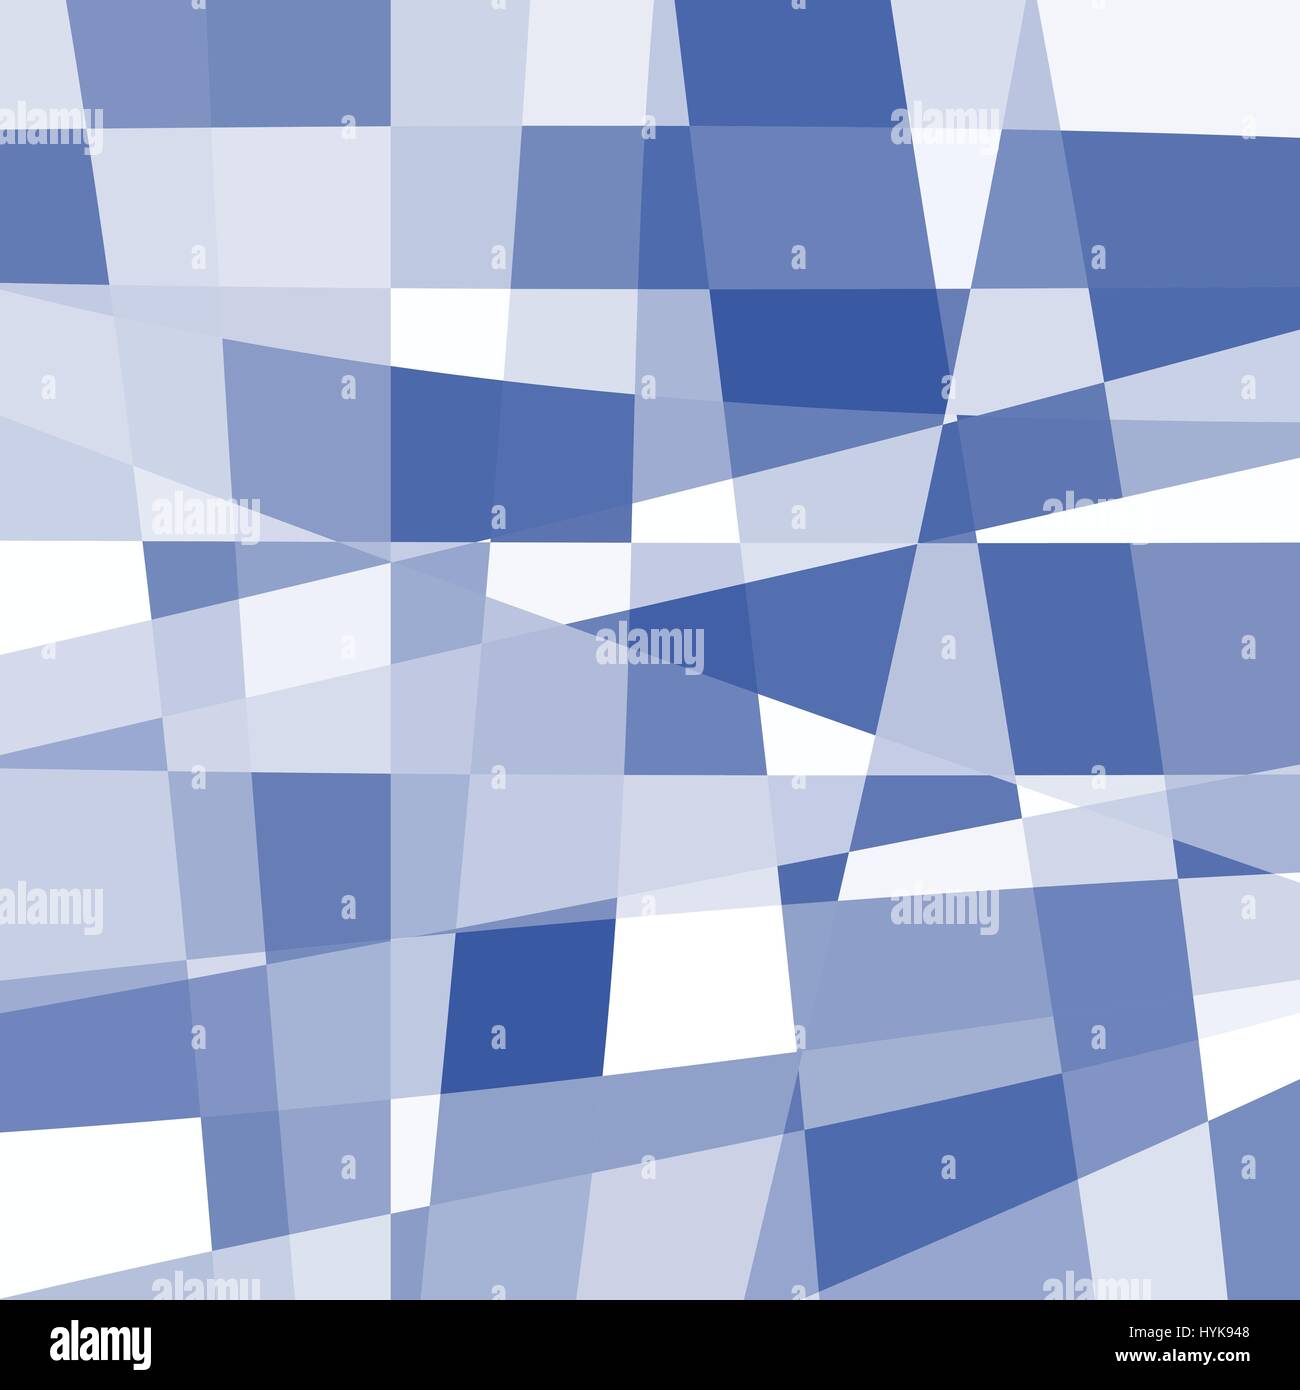 Abstract isolato di colori blu e bianco insolito sfondo a scacchi, rettangoli di diverse forma irregolare sfondo, inusuale pattern texture illustrazione vettoriale Illustrazione Vettoriale